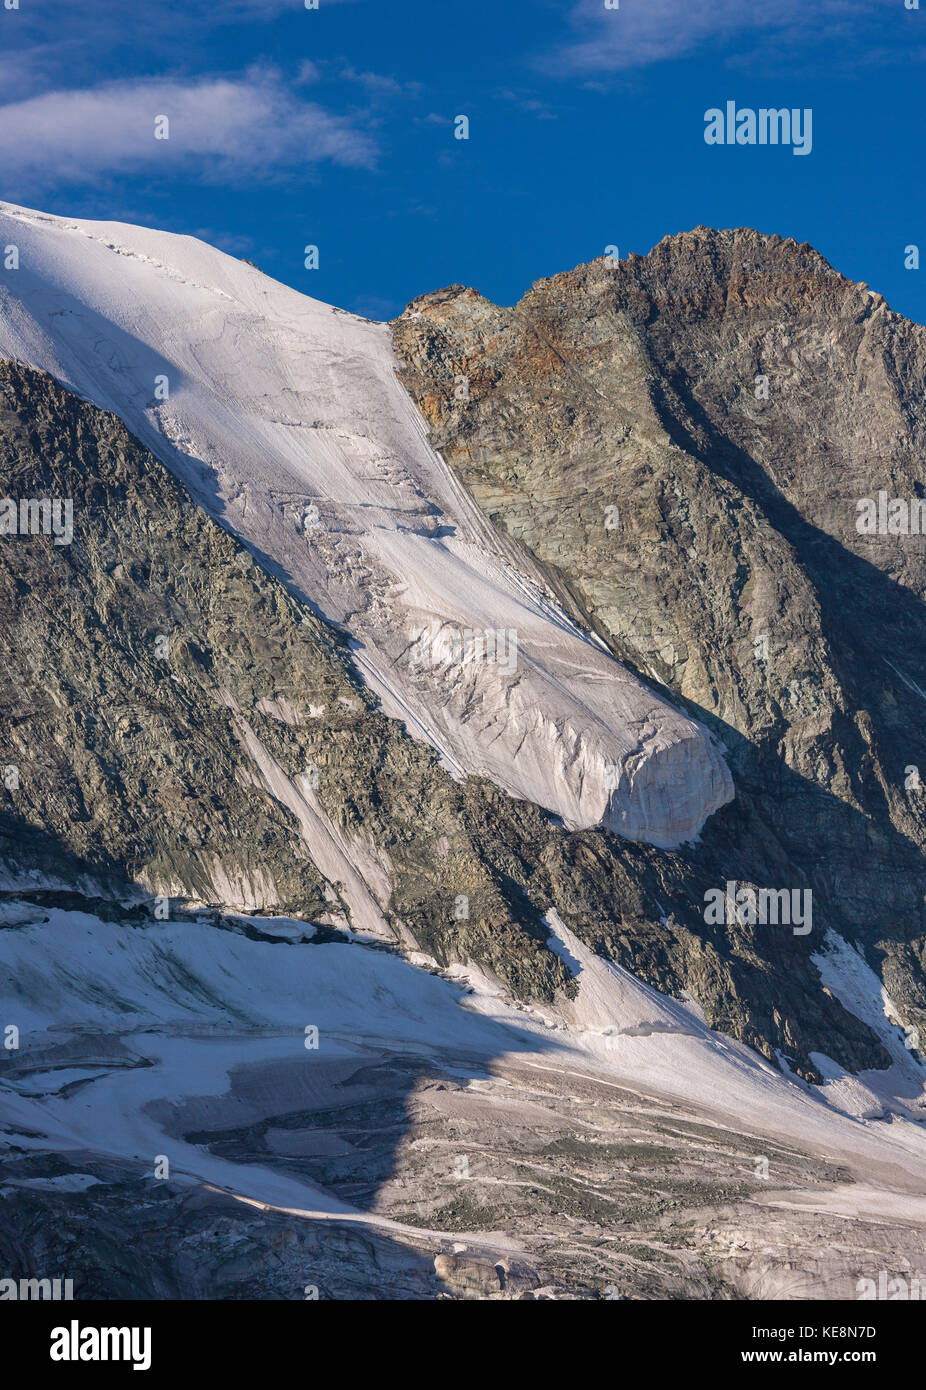 La vallée de Moiry, Suisse - glacier suspendu le glacier de Moiry, paysage de montagne, dans les Alpes Pennines dans le canton du Valais. Banque D'Images